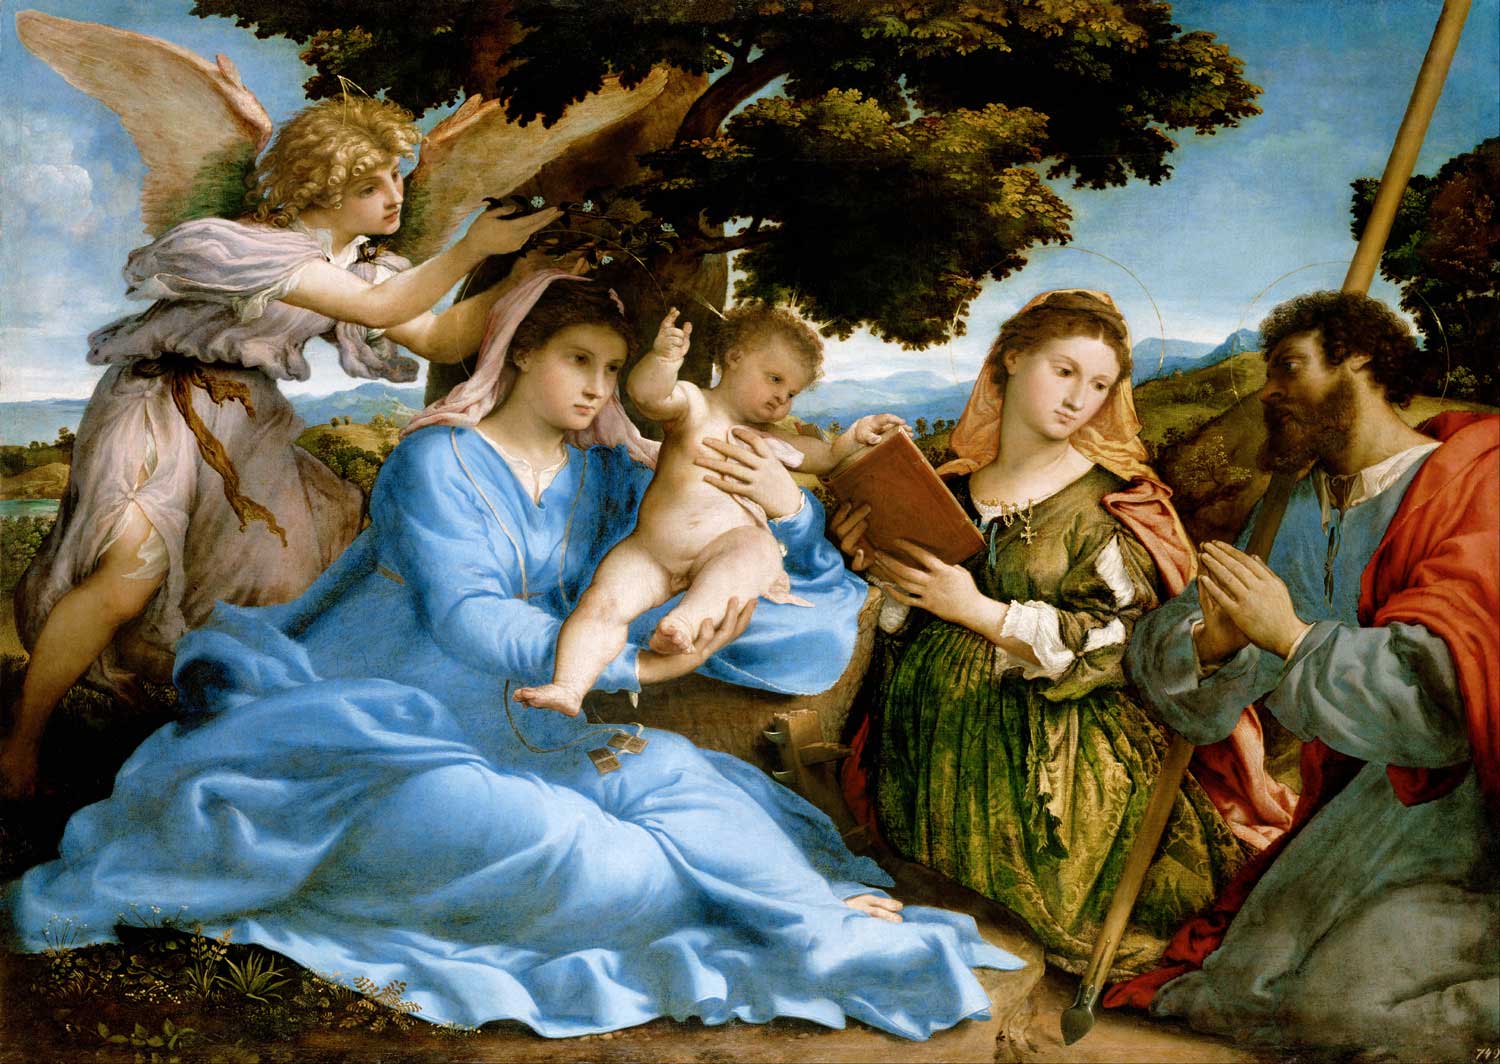 Puzzle Enjoy Virgen y el Niño con los Santos de 1000 Pzs